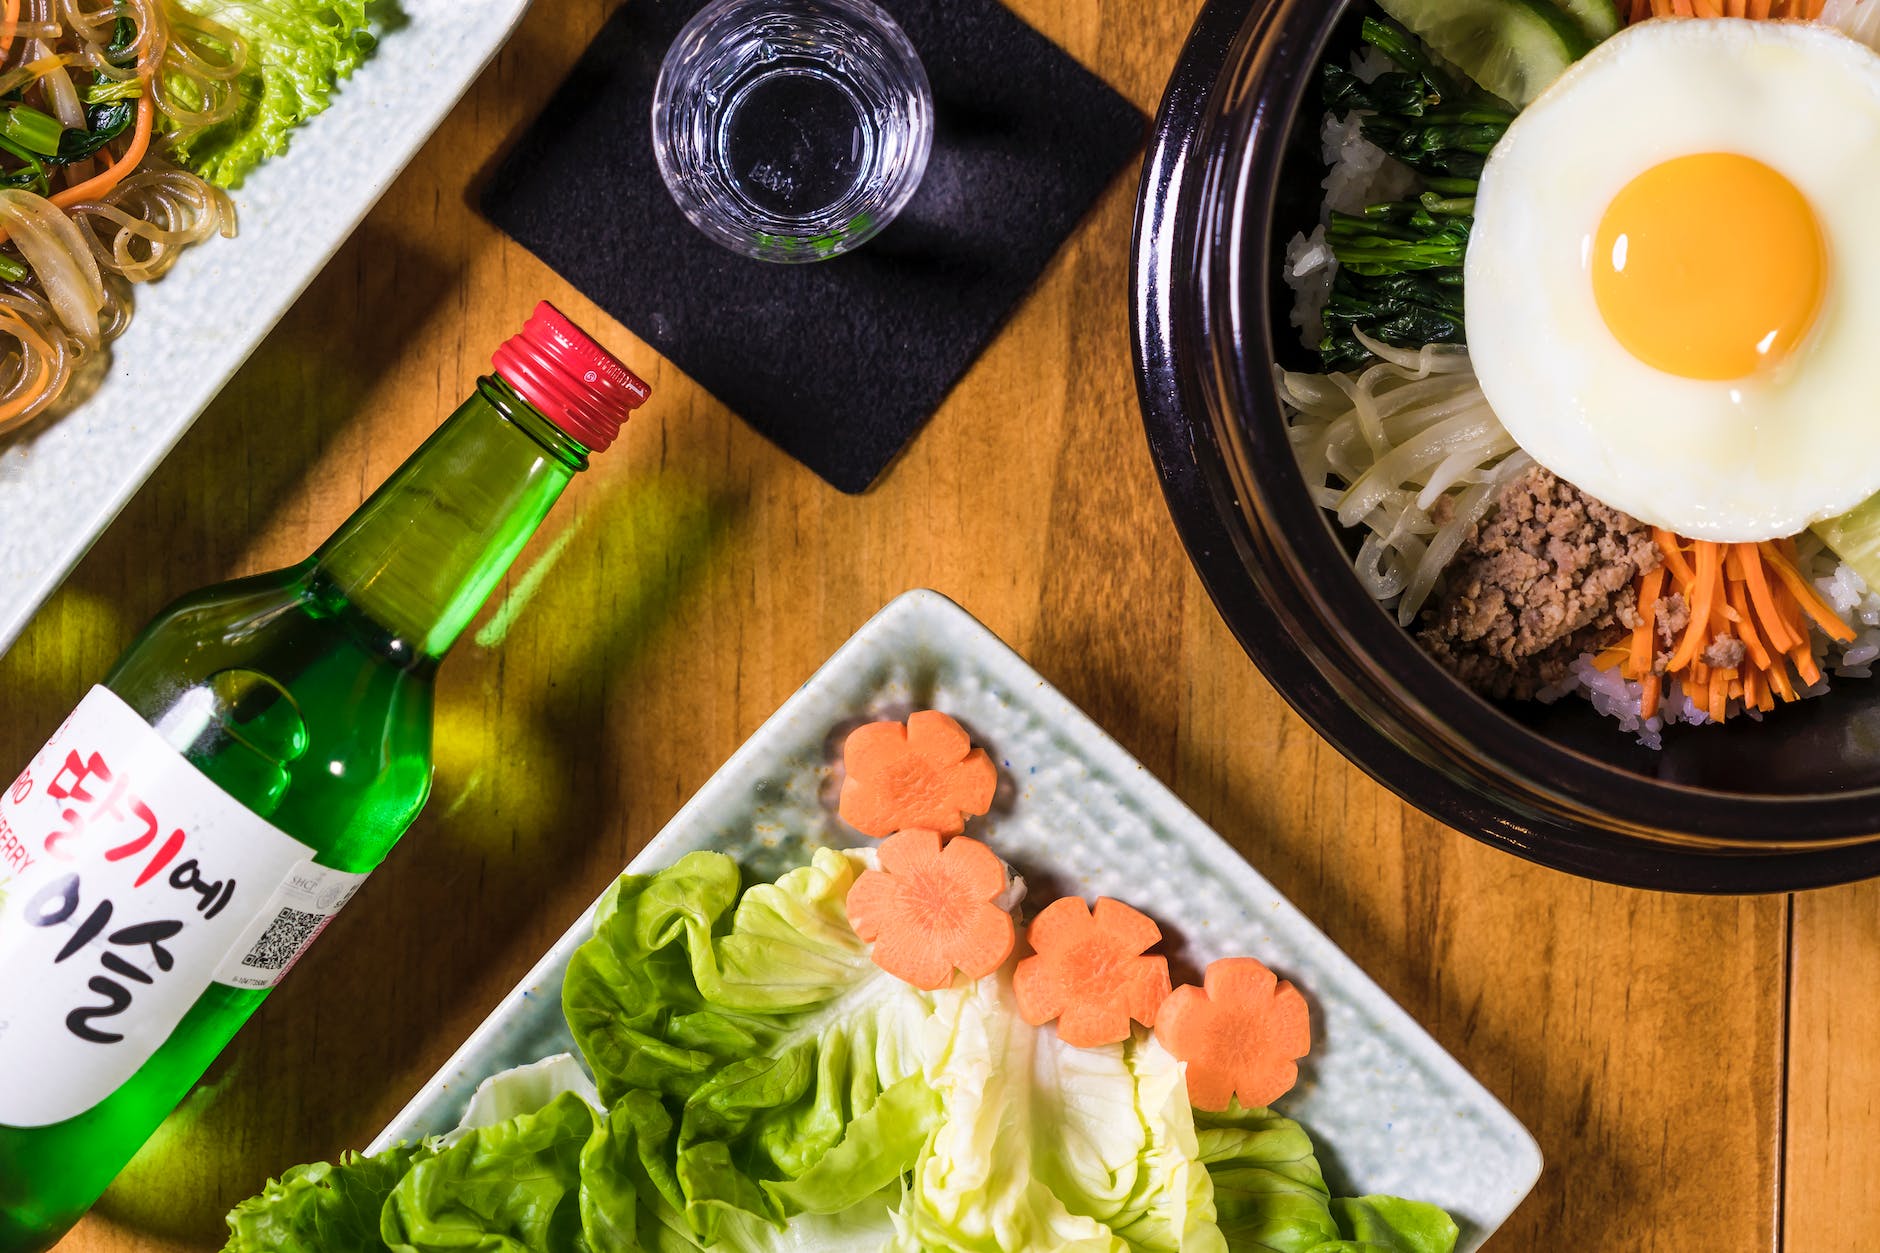 길거리 음식 유튜버가 서울에 한식당을 연 이유, 그리고 푸드 투어리즘